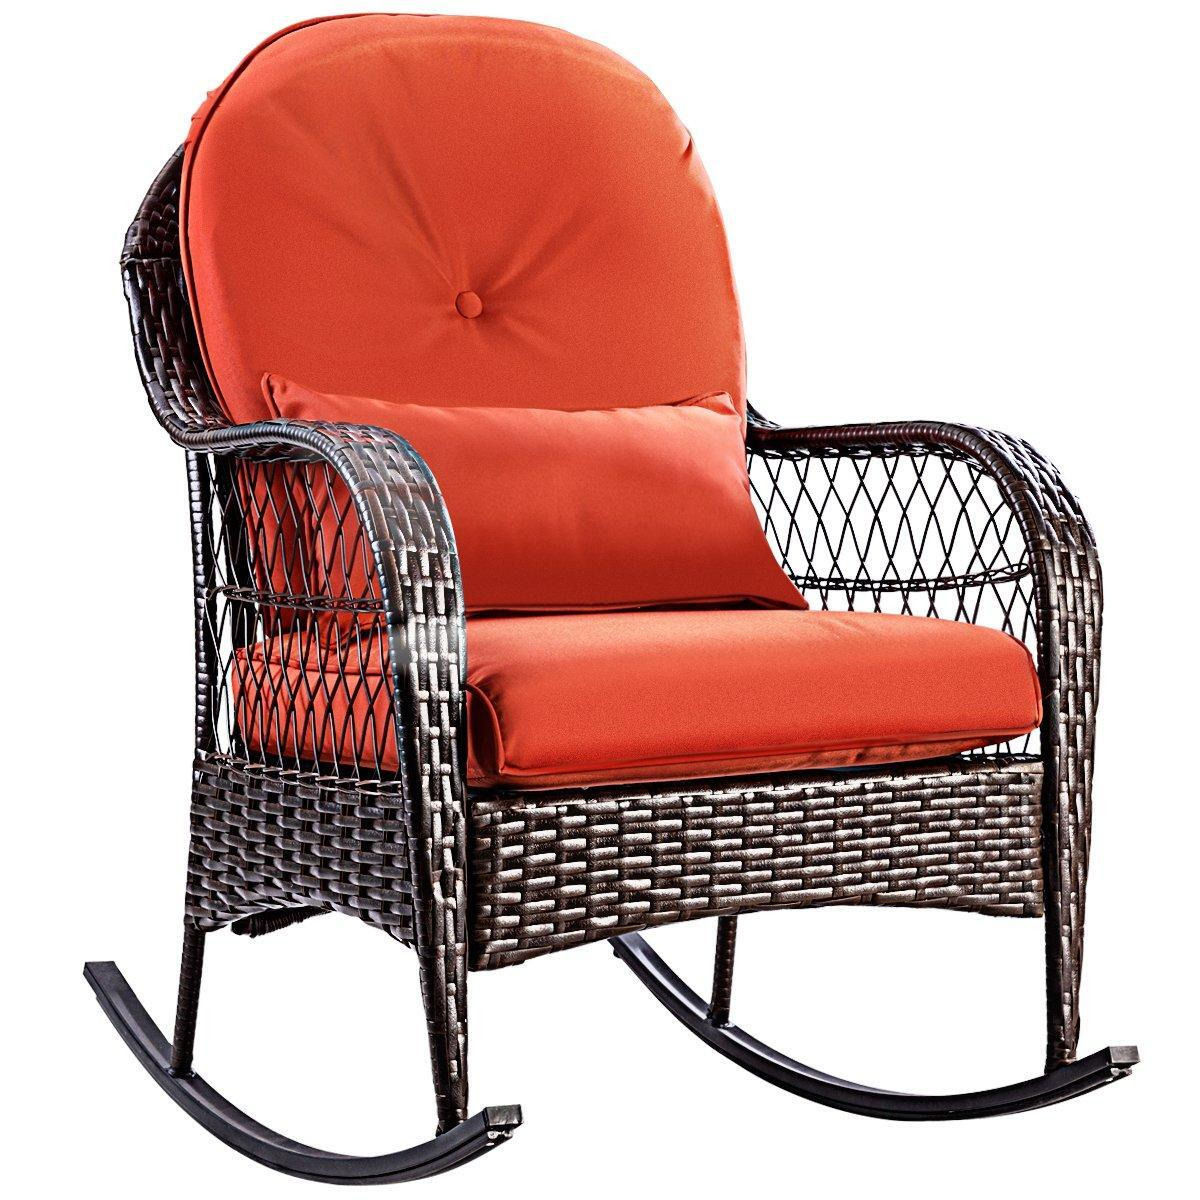 Wicker Rocking Chair Porch Garden Wicker Rocker Patio Furniture - image 1